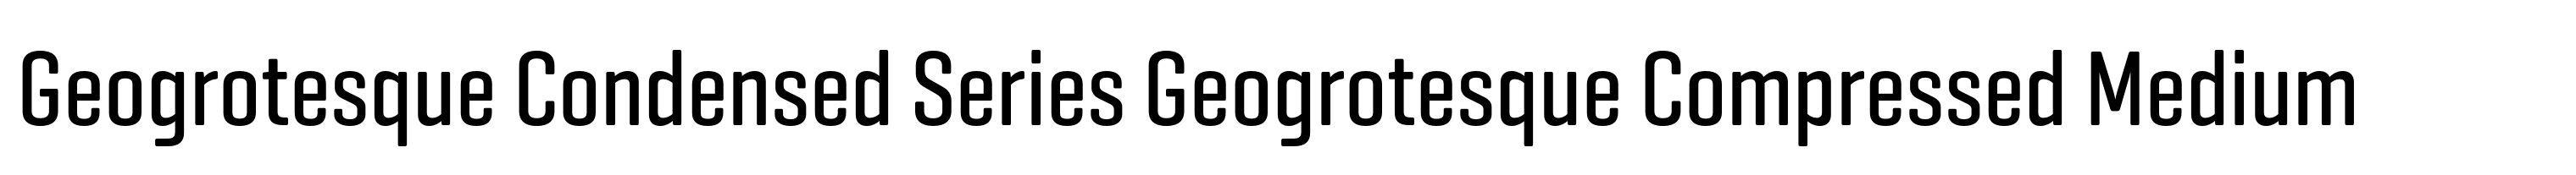 Geogrotesque Condensed Series Geogrotesque Compressed Medium